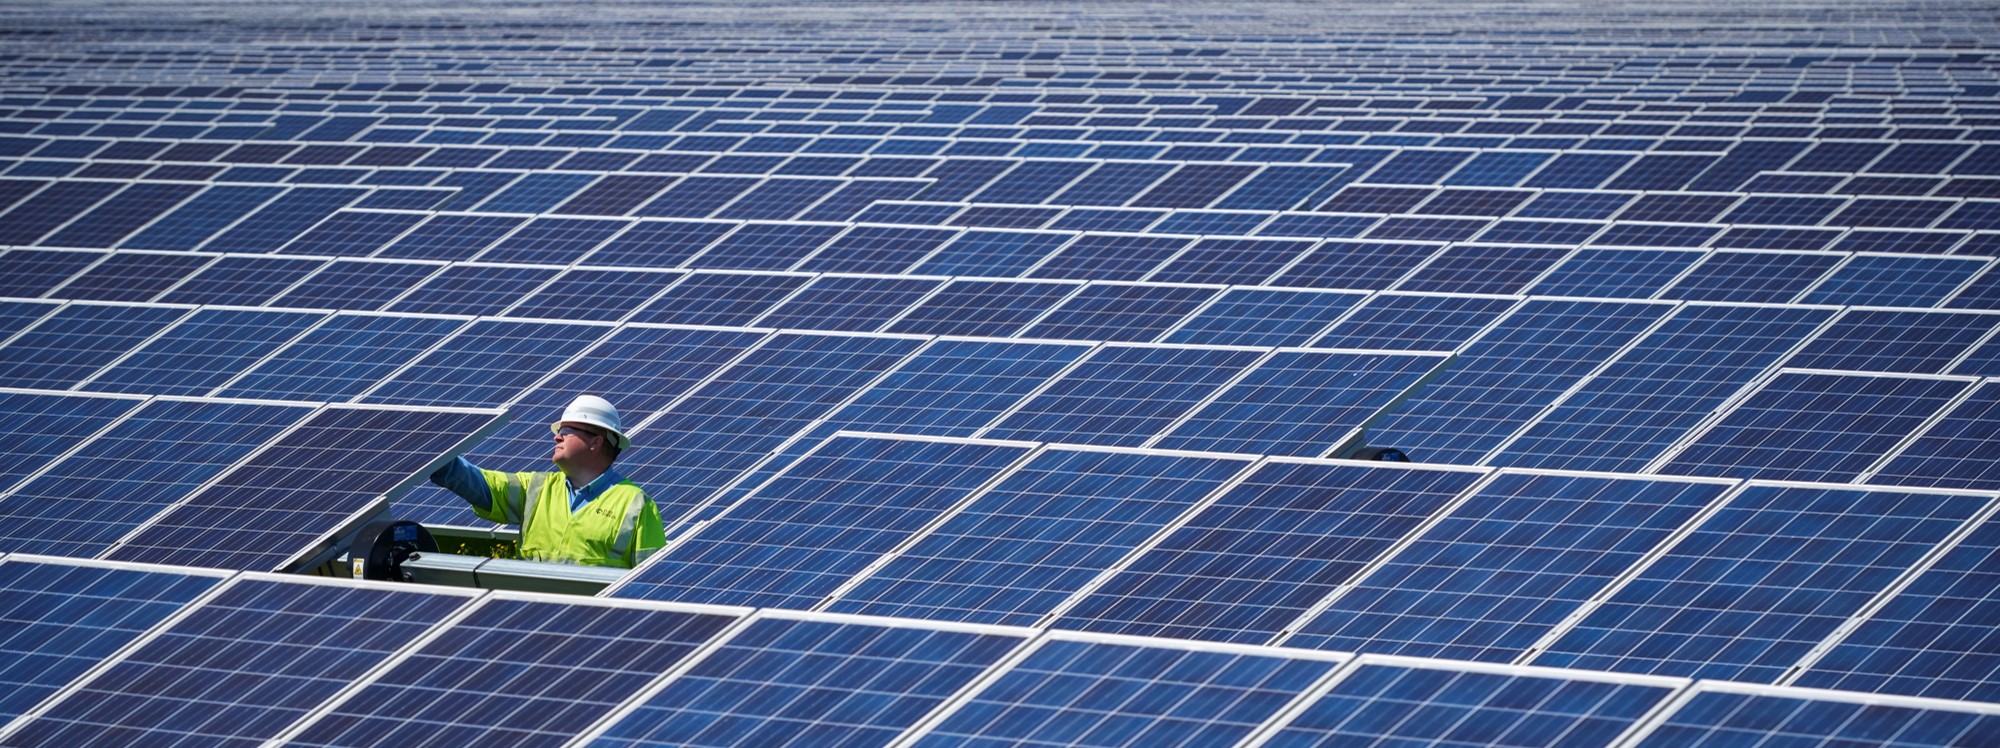 3.9 GW Bids For 680 MW Duke Energy Solar Tender